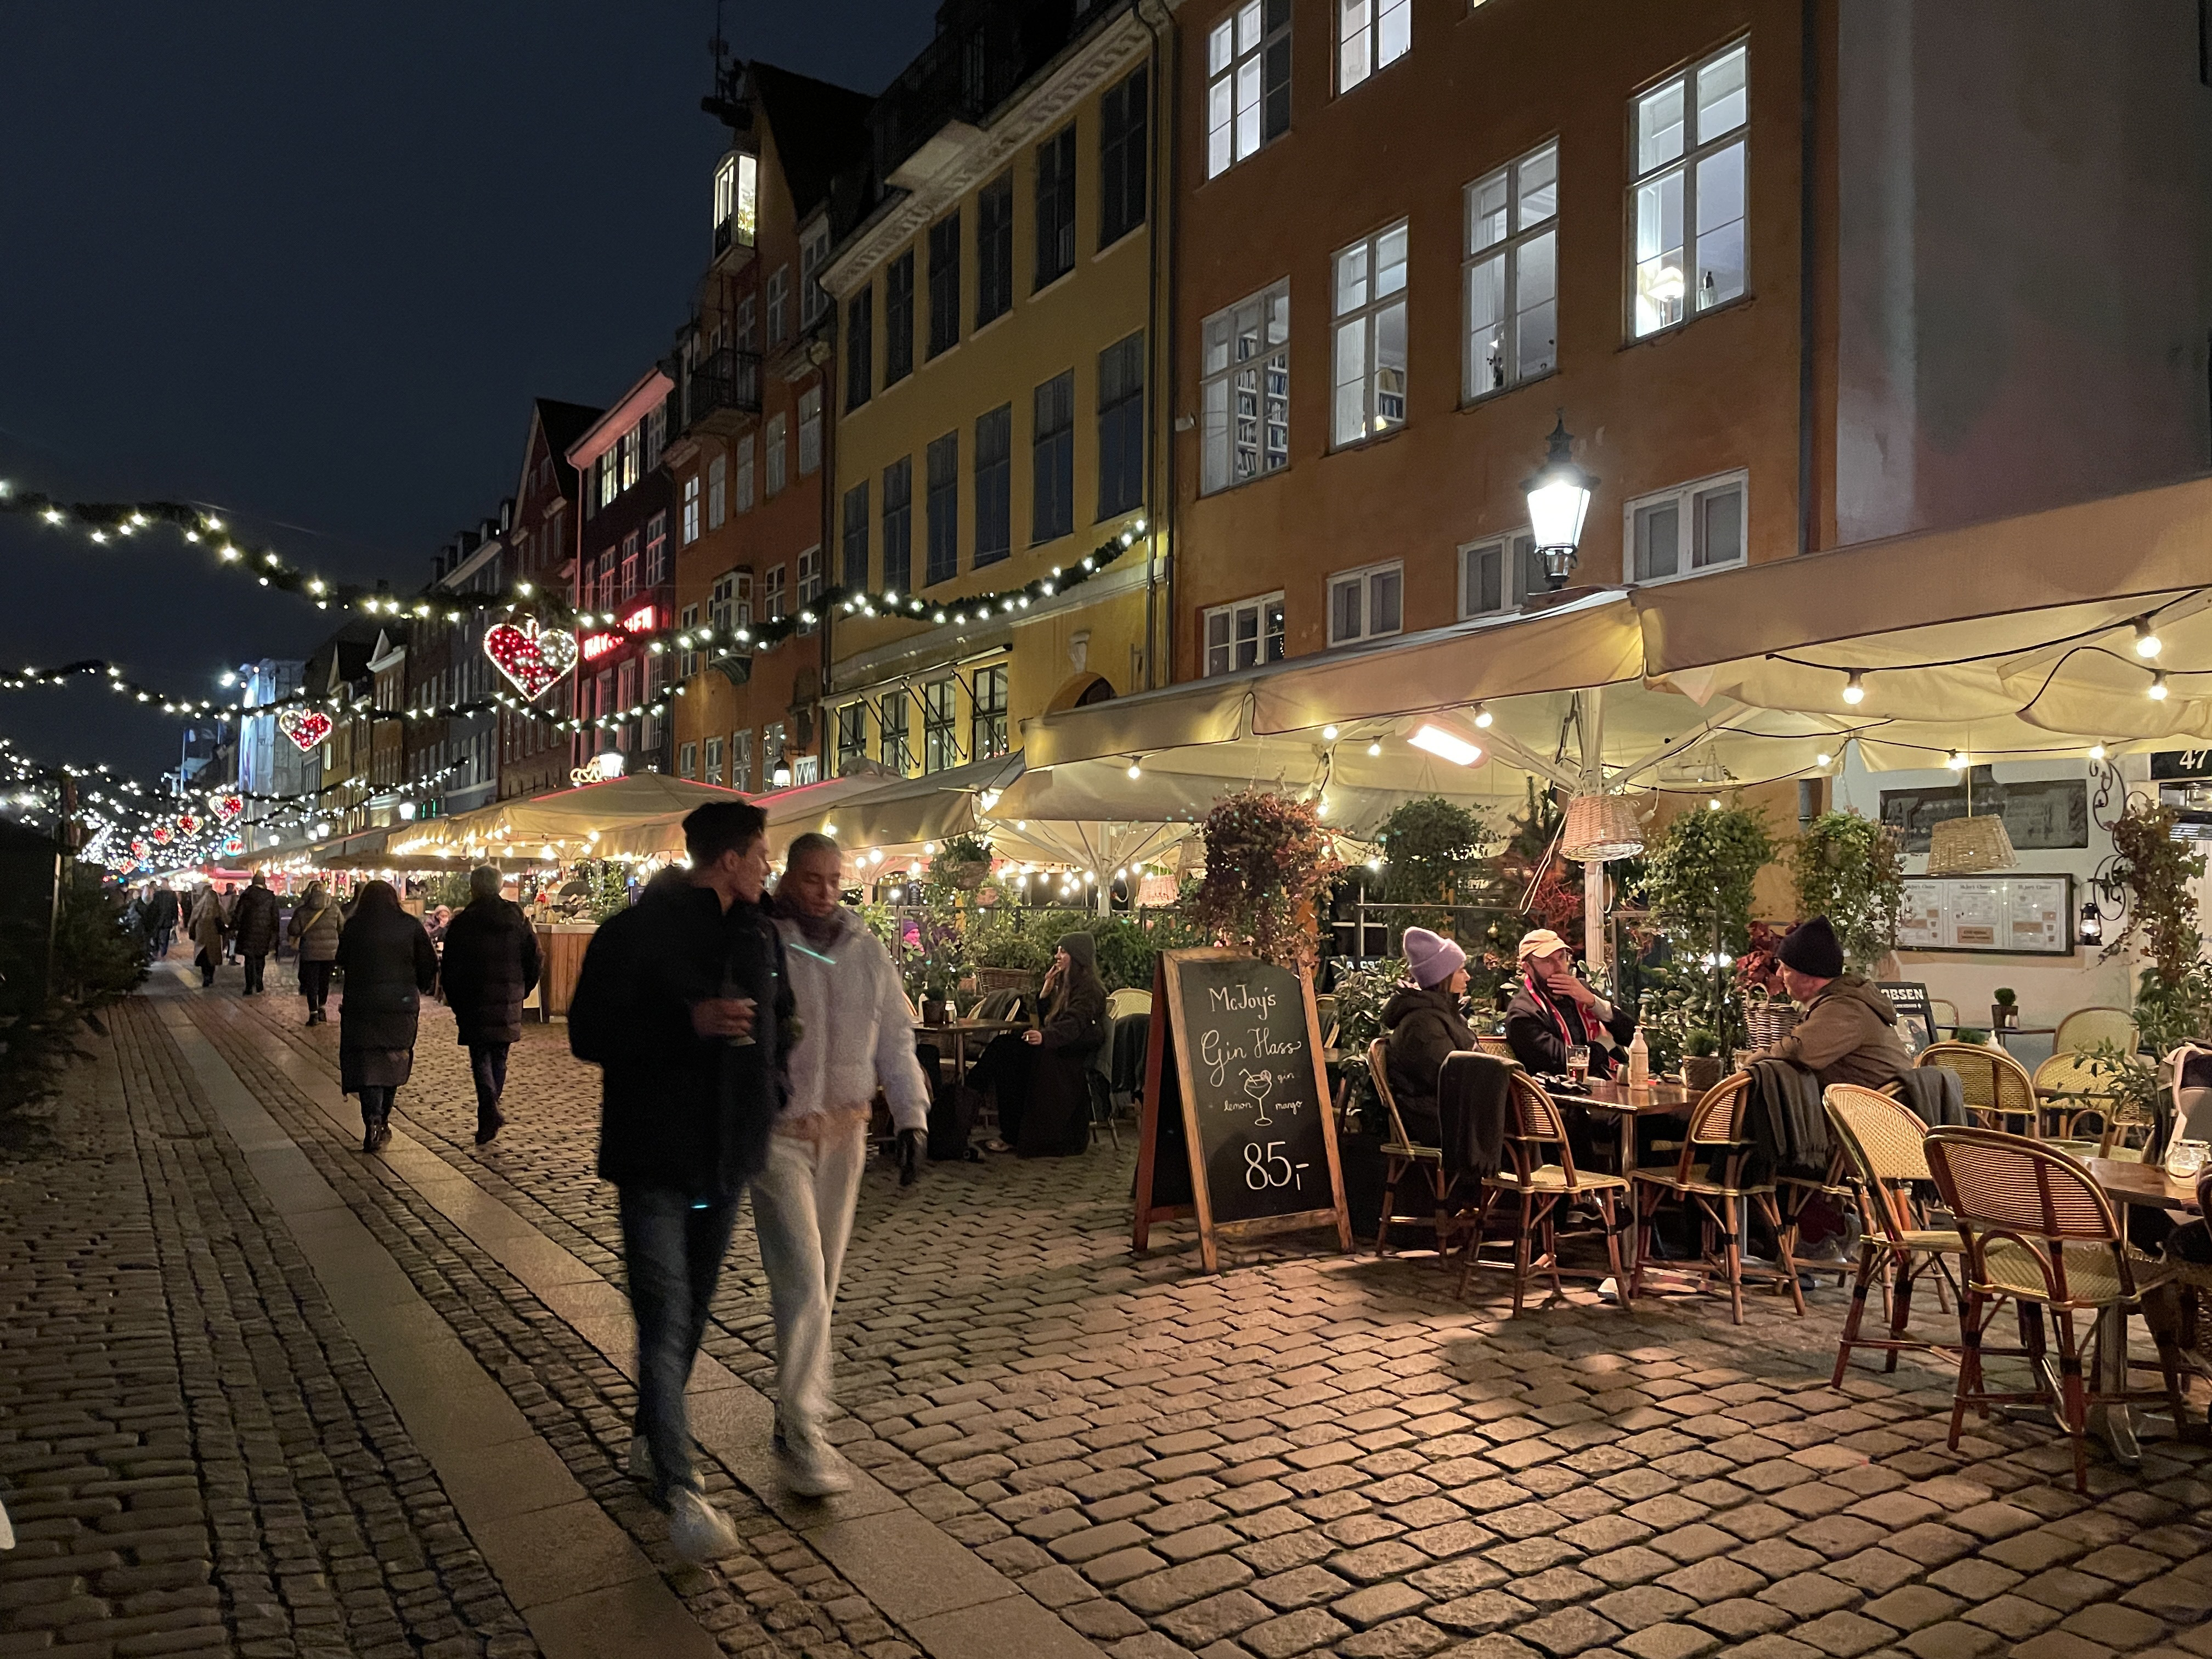 Con el aumento de los casos de coronavirus, Dinamarca cerró restaurantes y bares. Pero los grupos siguen reuniéndose, en el interior y al aire libre, en muchos de los barrios de Copenhague bordeados por canales. (Chico Harlan/The Washington Post)